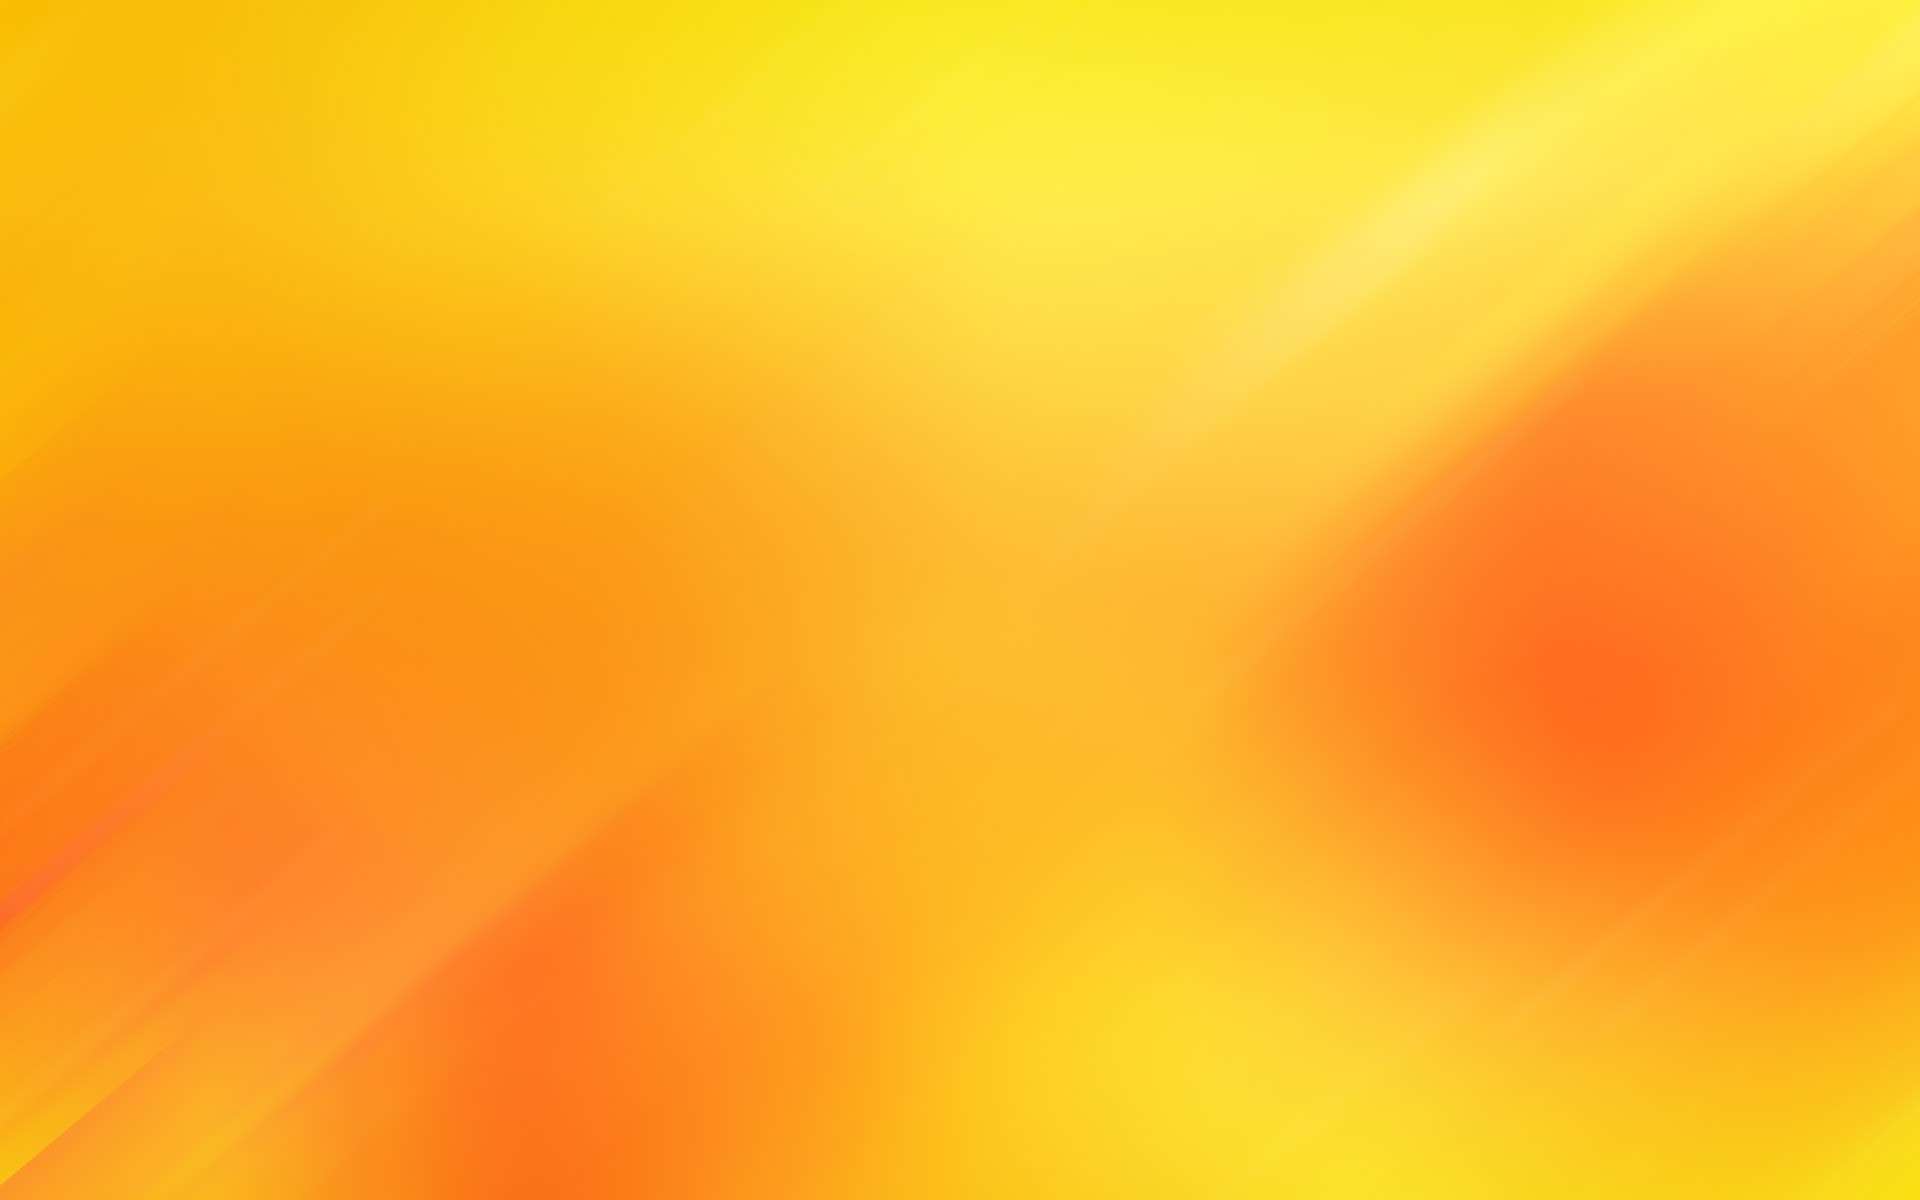 Hình nền gradient màu cam sẽ mang đến cho bạn sự thư giãn và hạnh phúc. Nó có thể làm cho bất kỳ màn hình nào trông tuyệt hơn và cho phép bạn tìm thấy sự cân bằng và lạc quan trong cuộc sống.